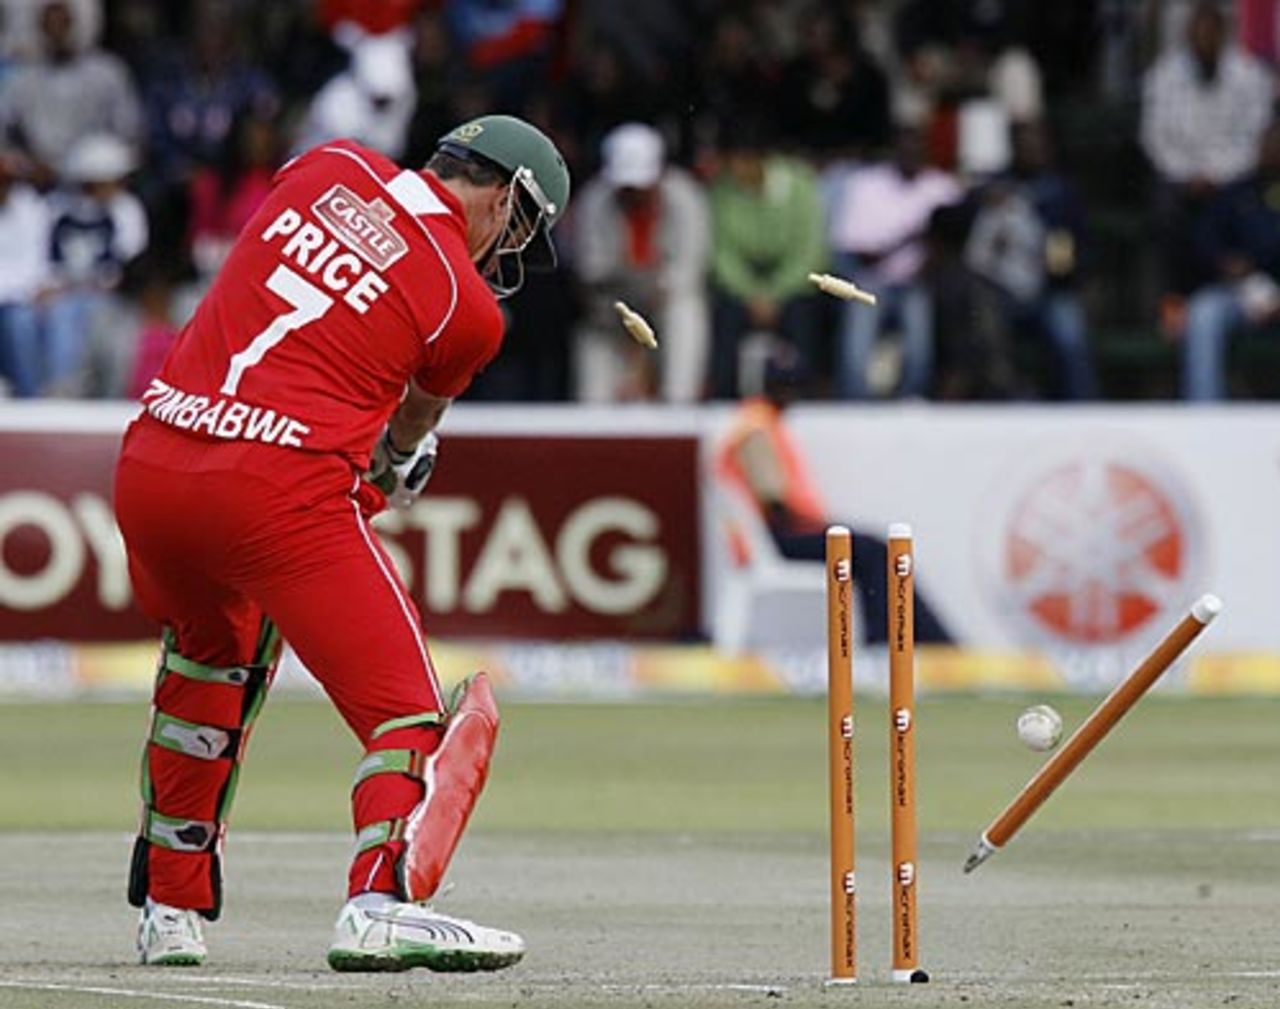 Ray Price is bowled by Ashok Dinda, Zimbabwe v India, 1st Twenty20, Harare, June 12, 2010